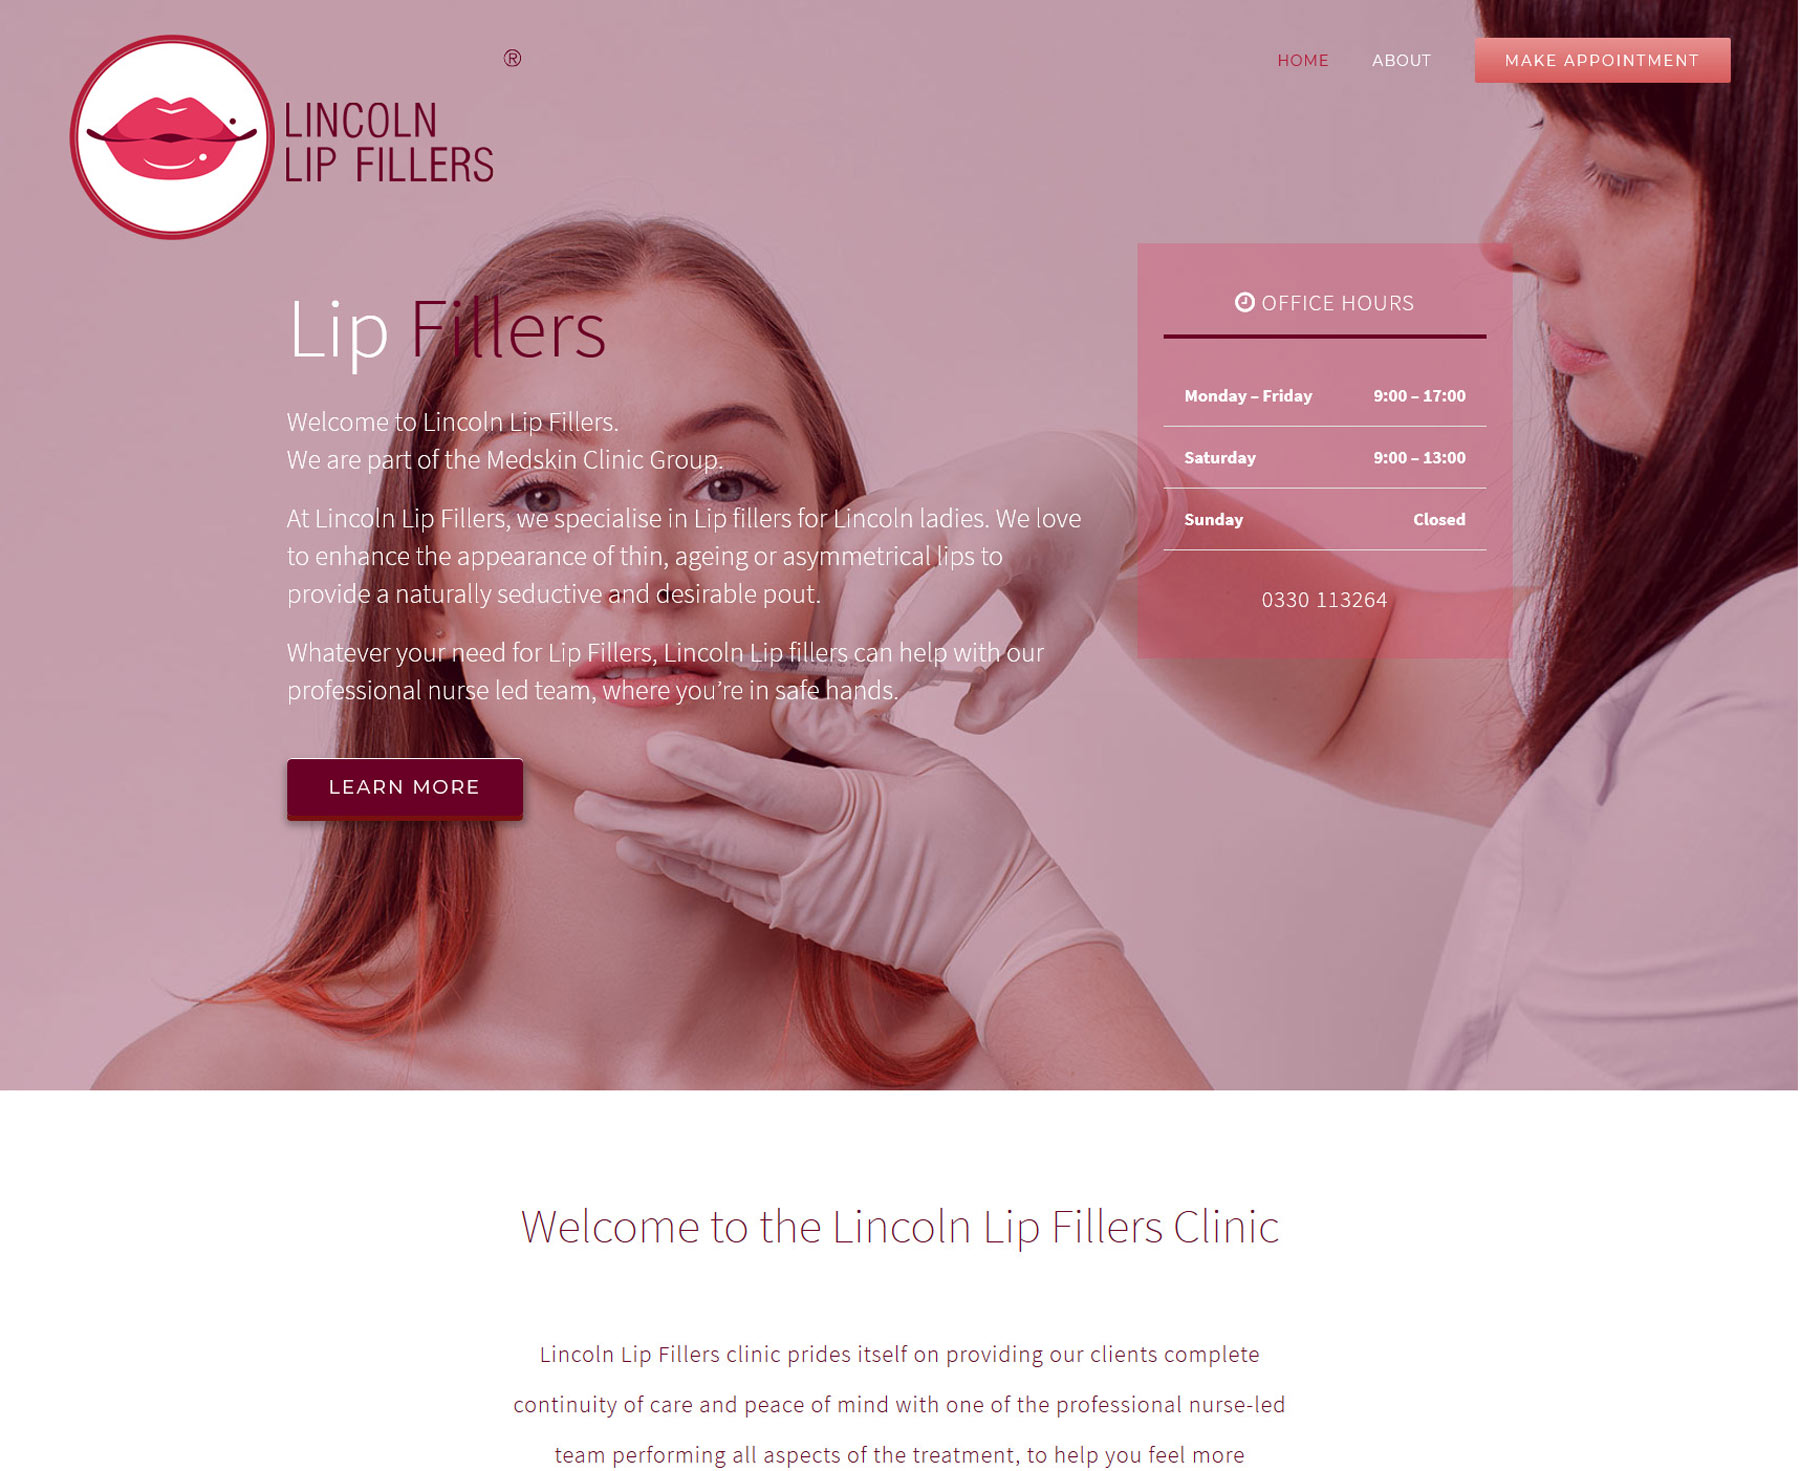 Lincoln Lip Fillers - website design